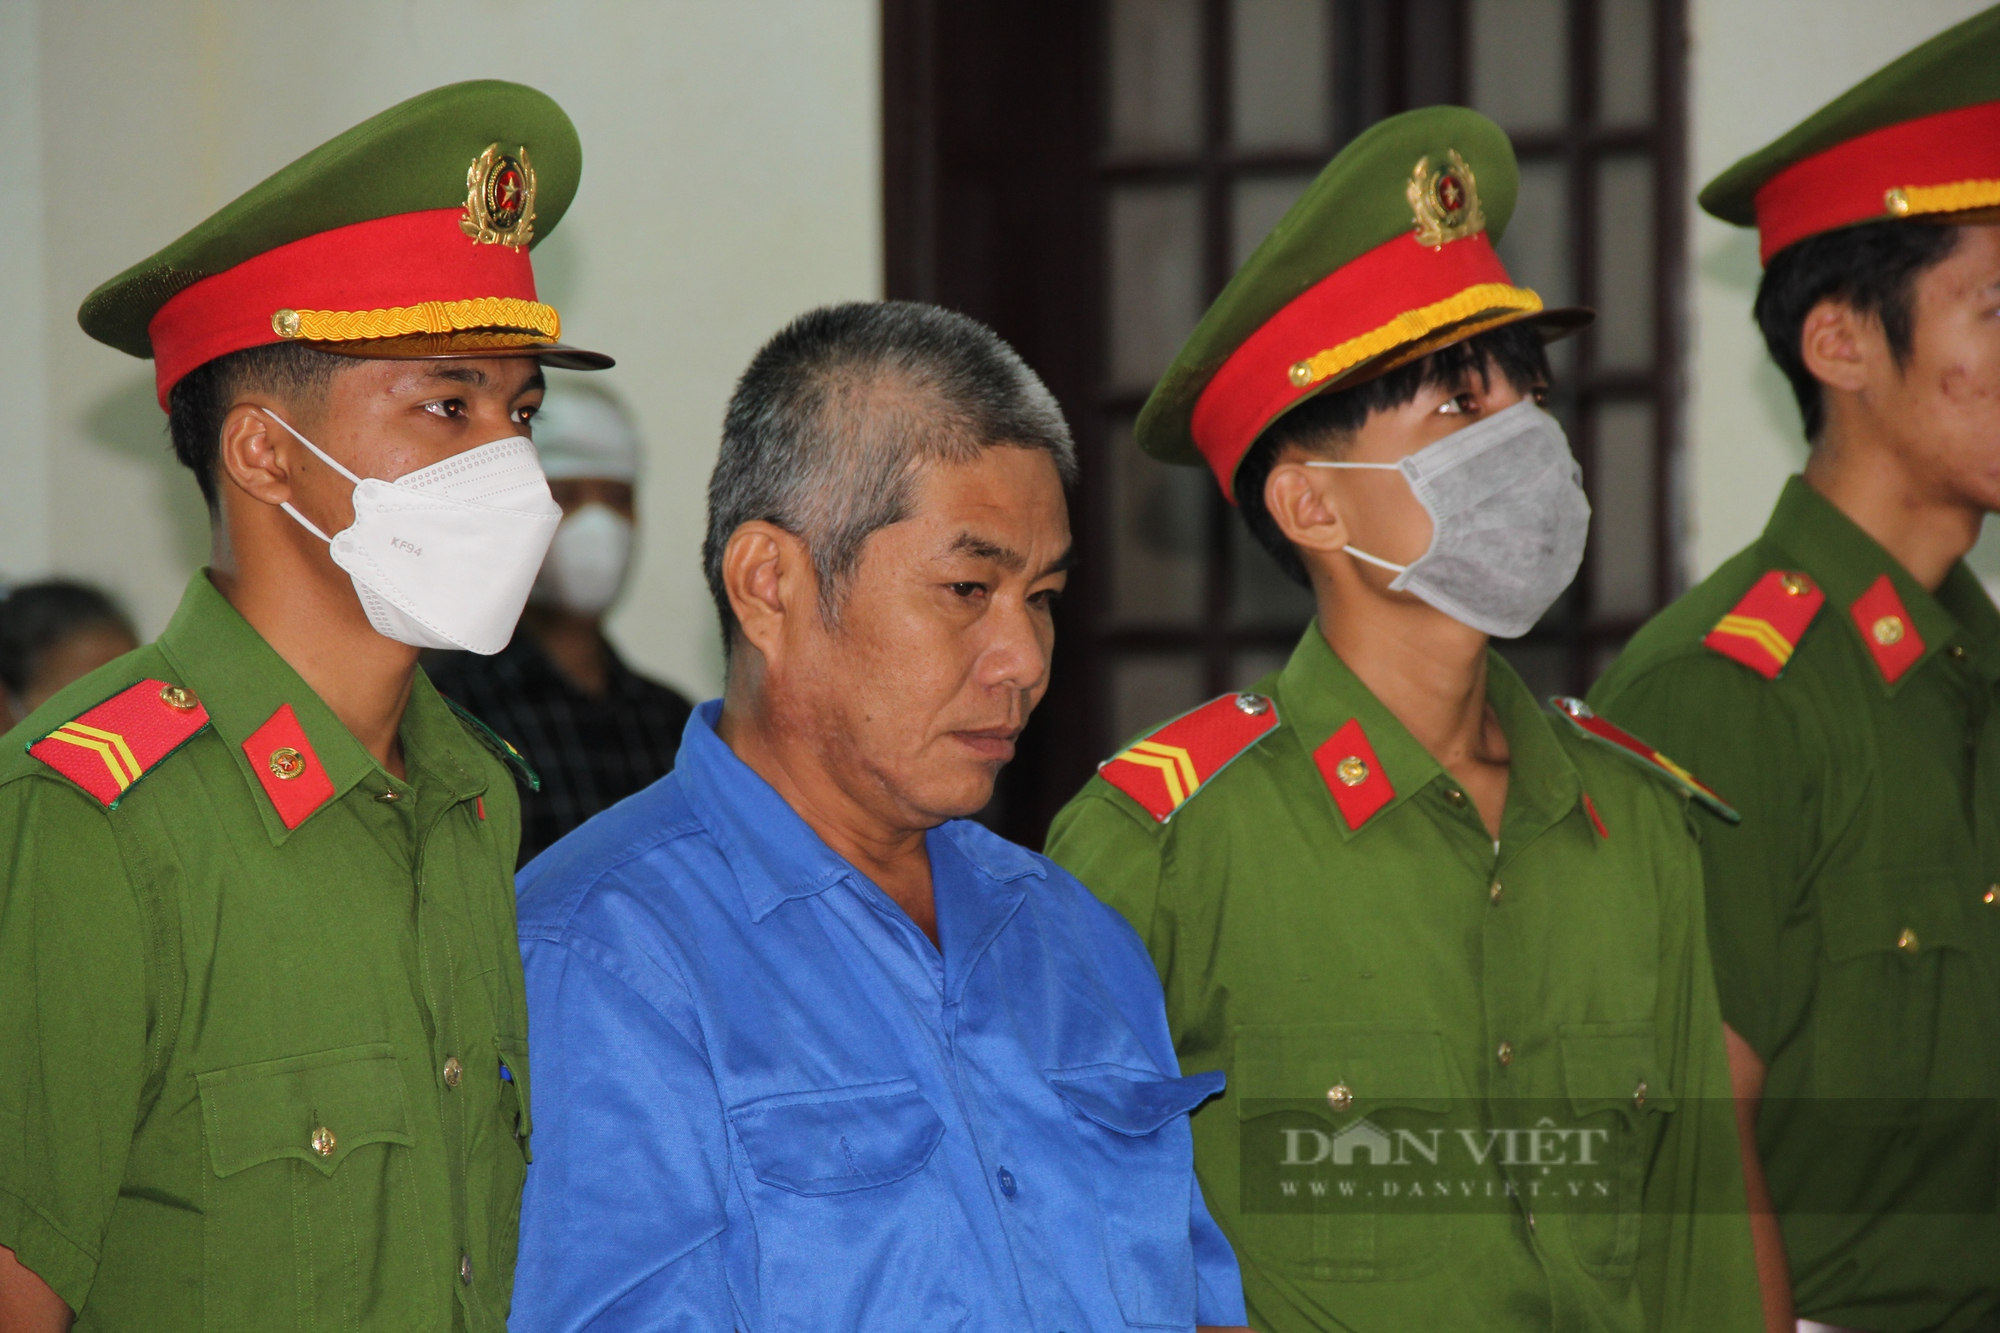 Cựu tu sĩ giết người, phi tang xác ở Quảng Trị khai chỉ “lỡ tay” - Ảnh 4.